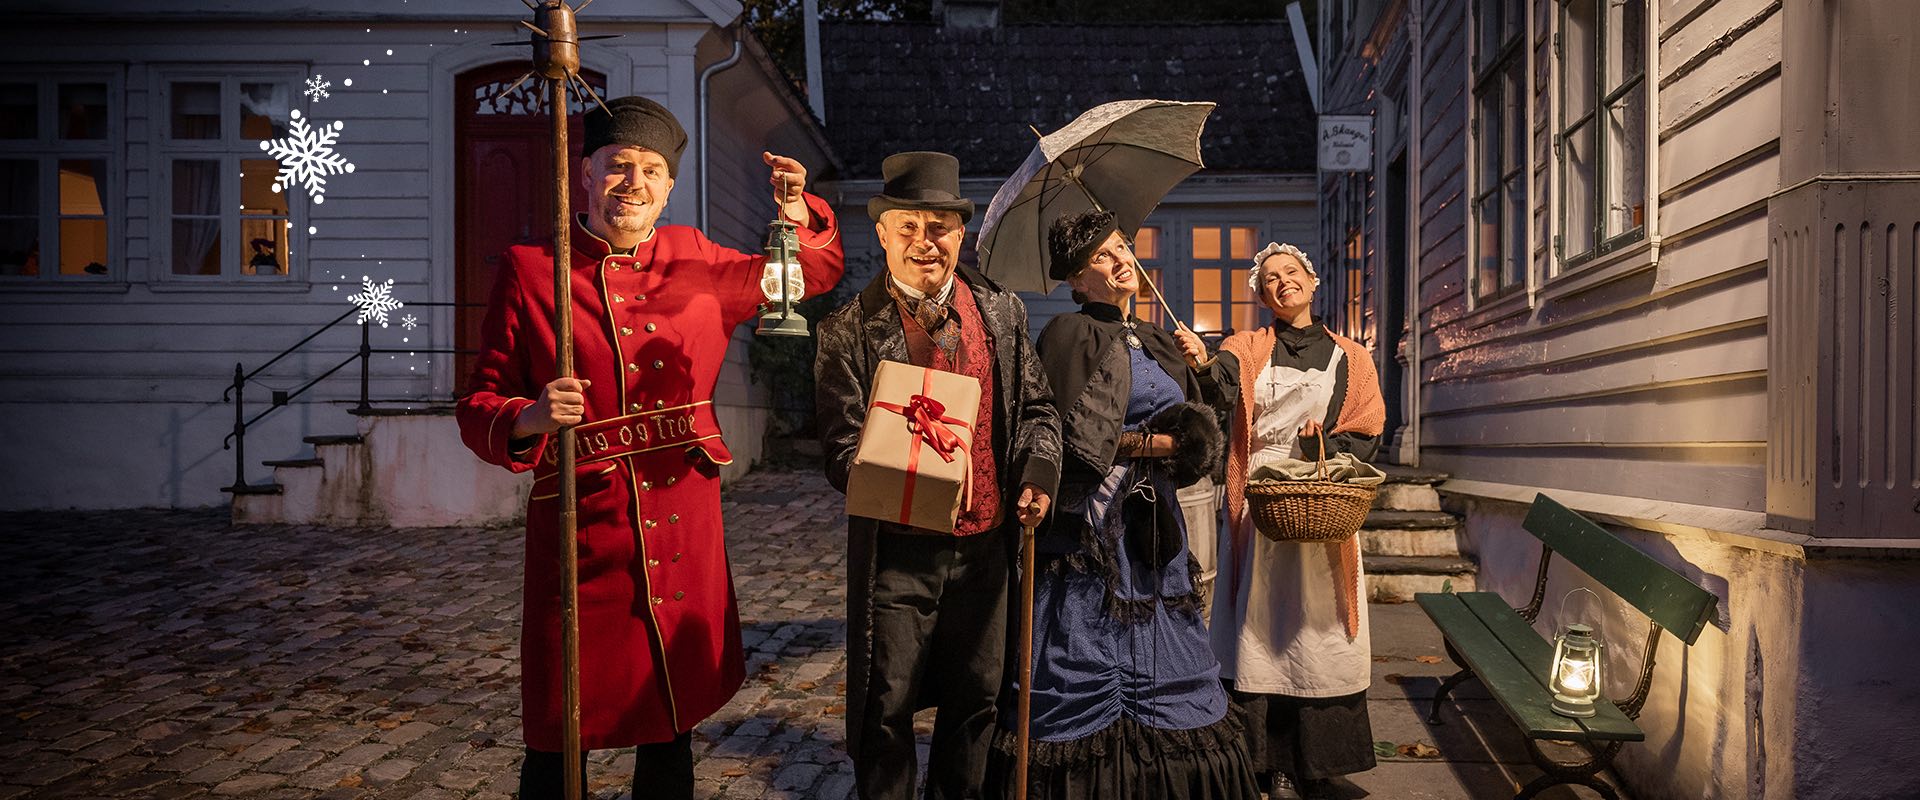 Teatervandring i Gamle Begen: Hællane! E det jul... igjen! Bymuseet i Bergen